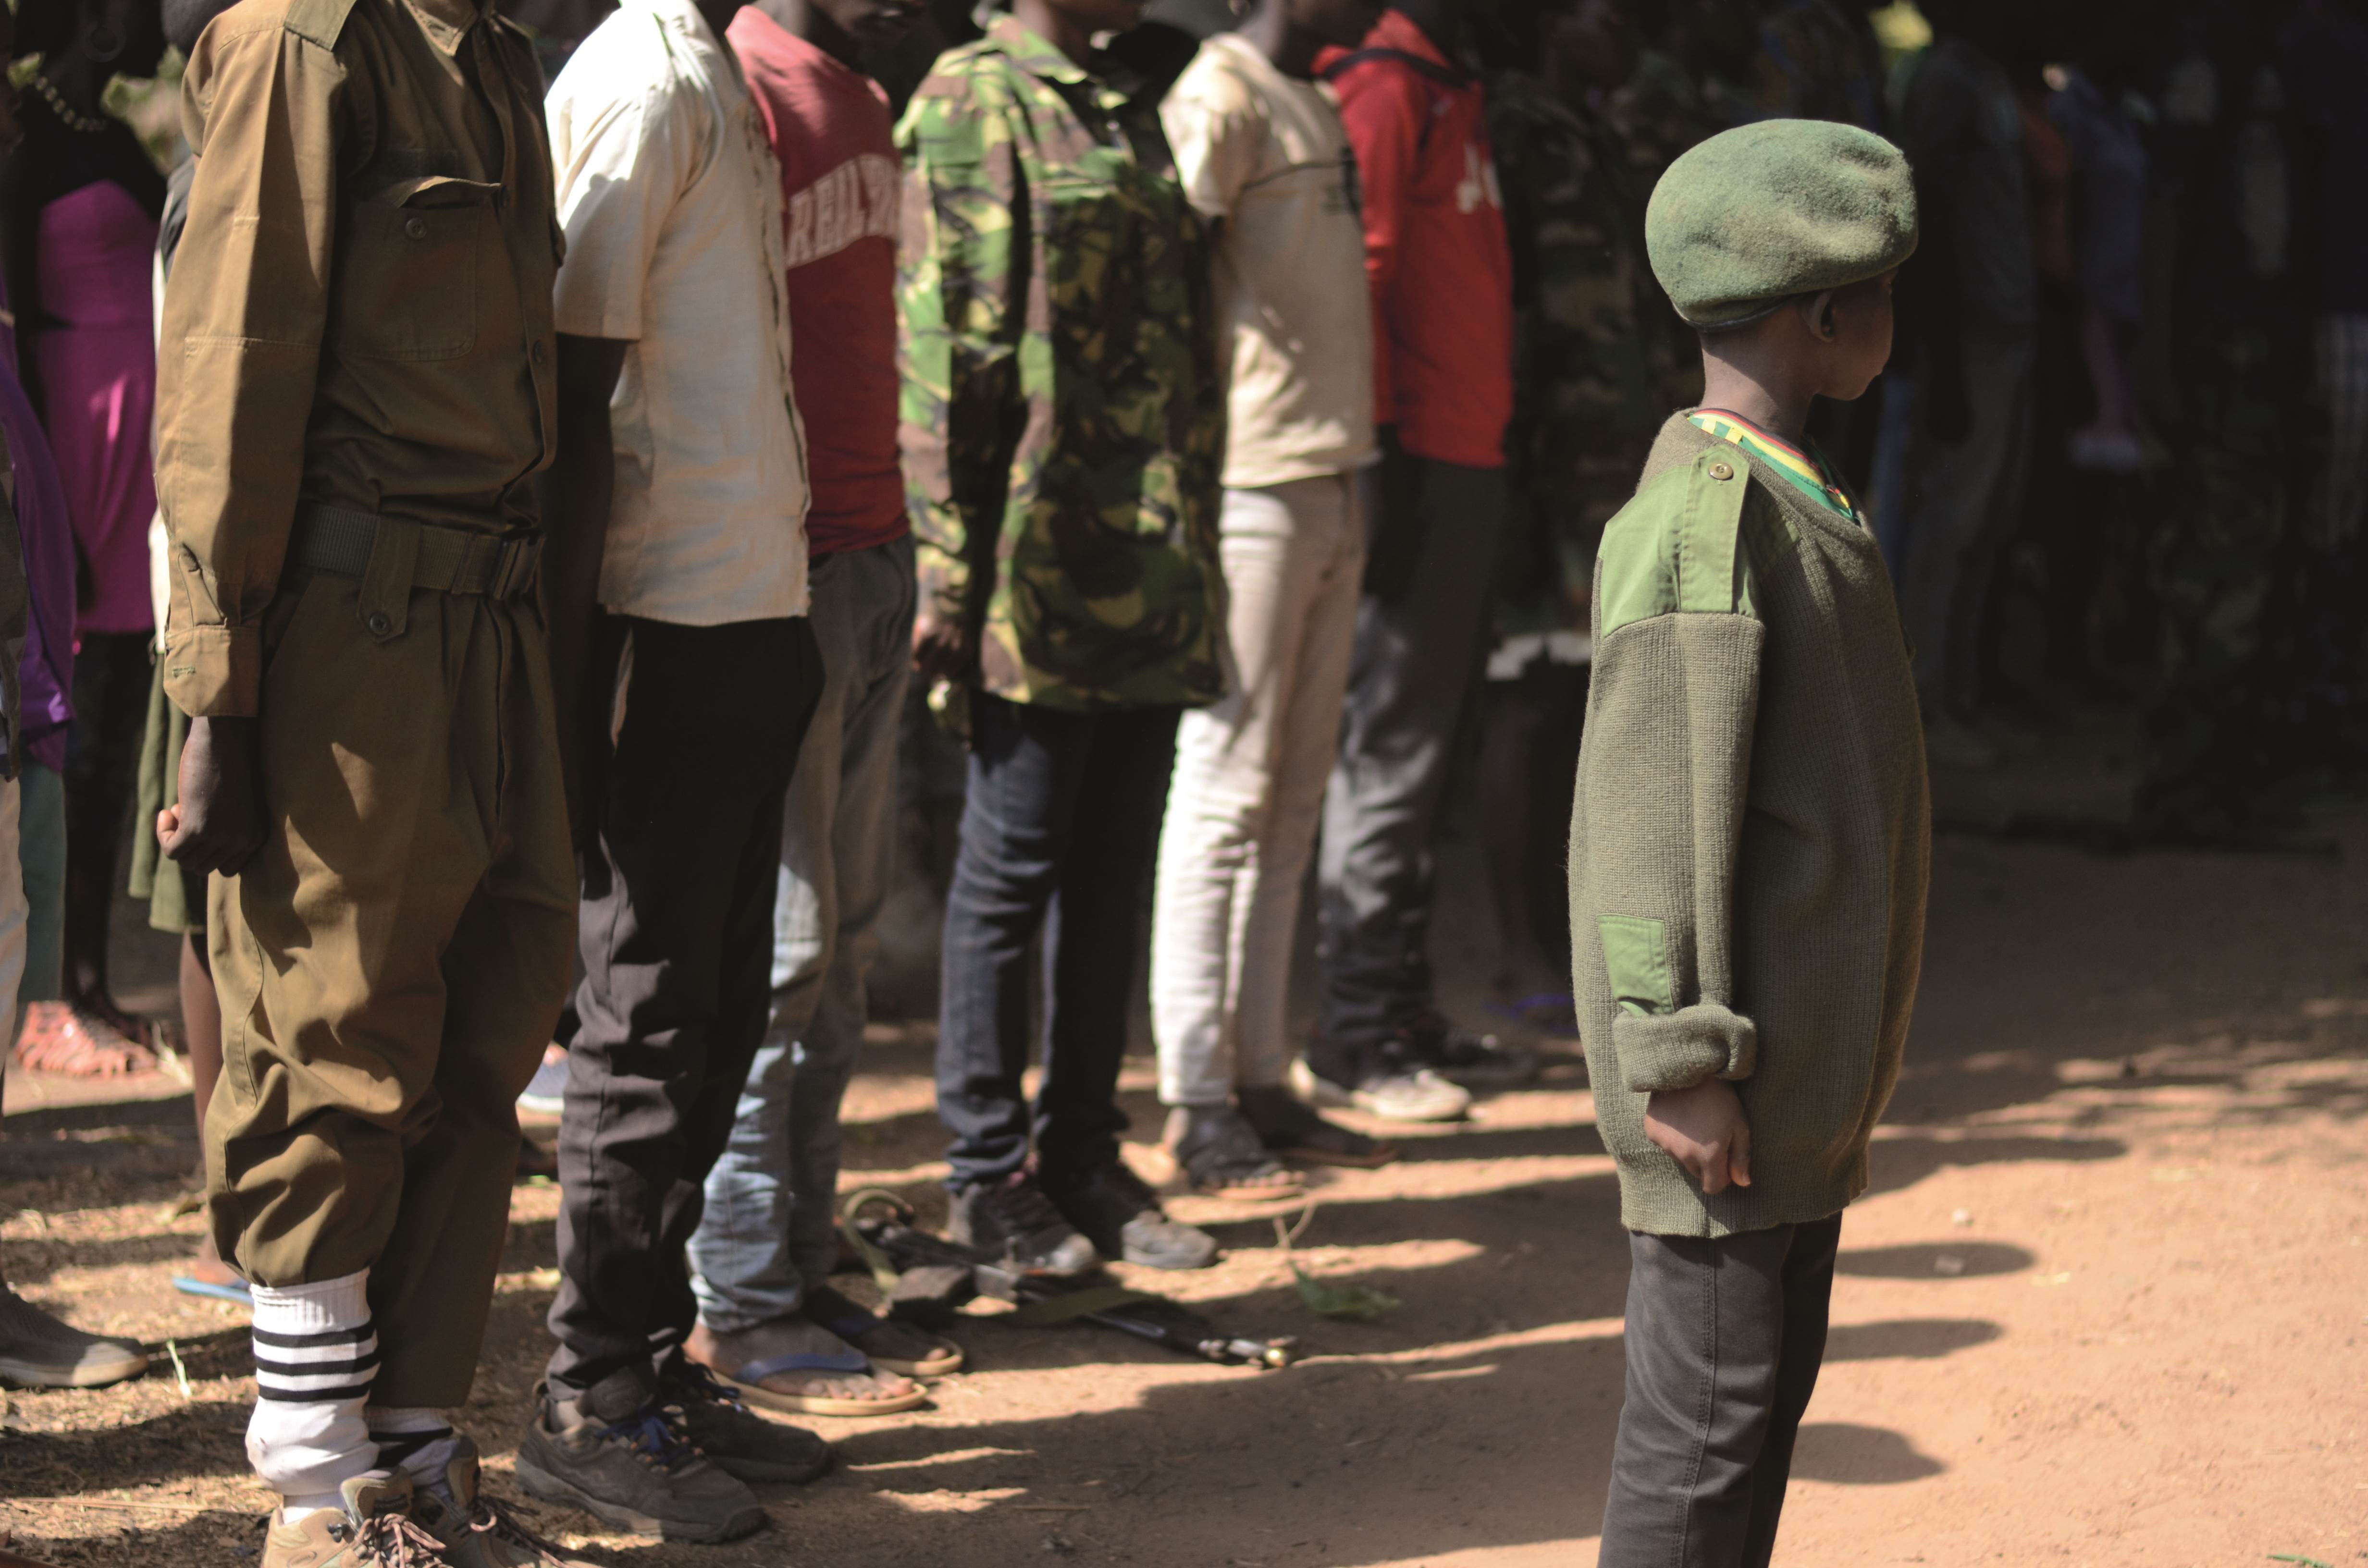 Personas hacen fila detrás de un niño vestido con camuflaje del ejército y una boina en Sudán del Sur